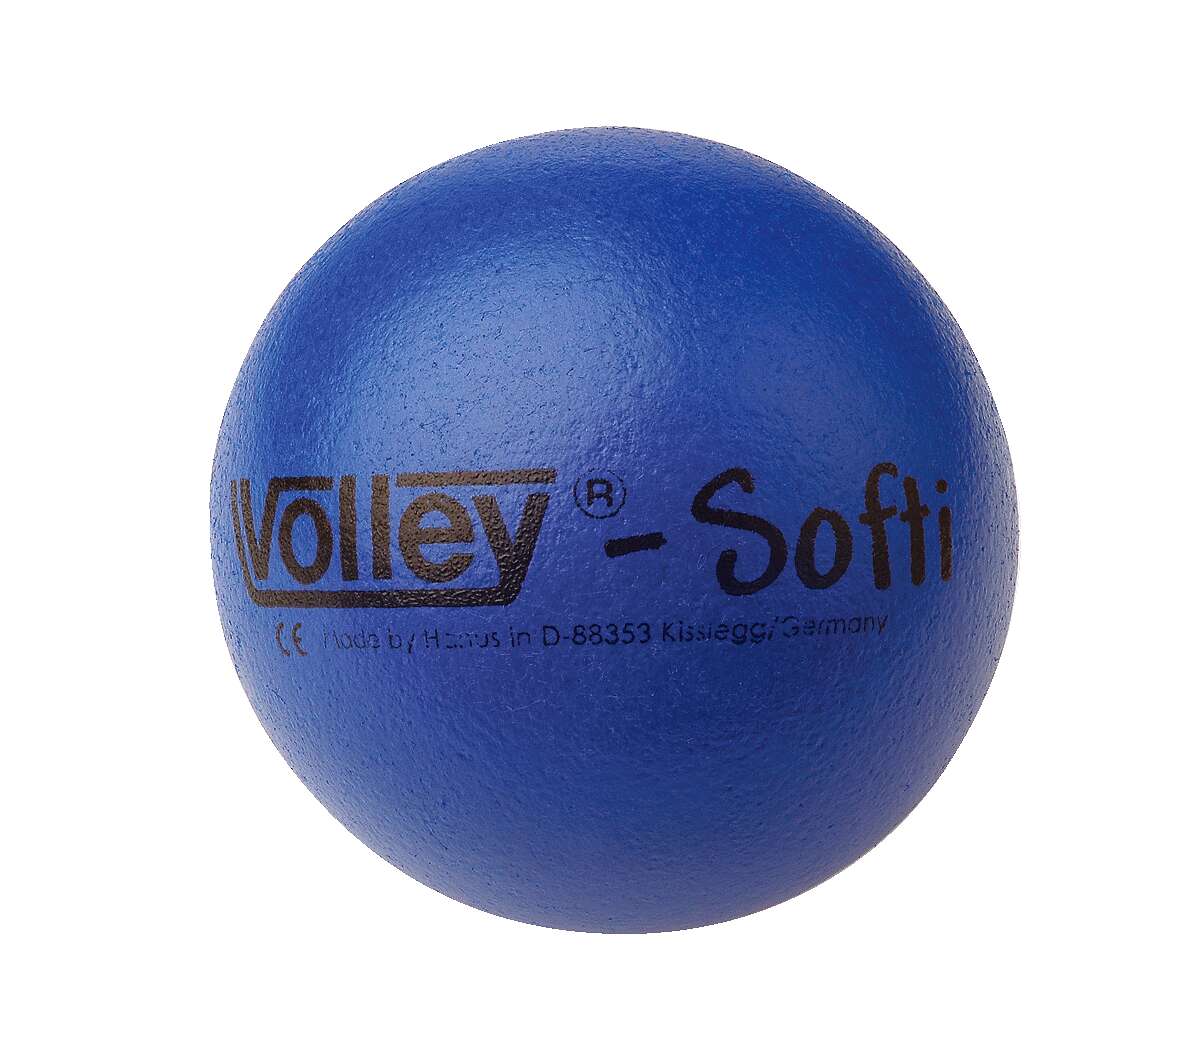 Volley Weichschaumball "Softi", Blau von Volley